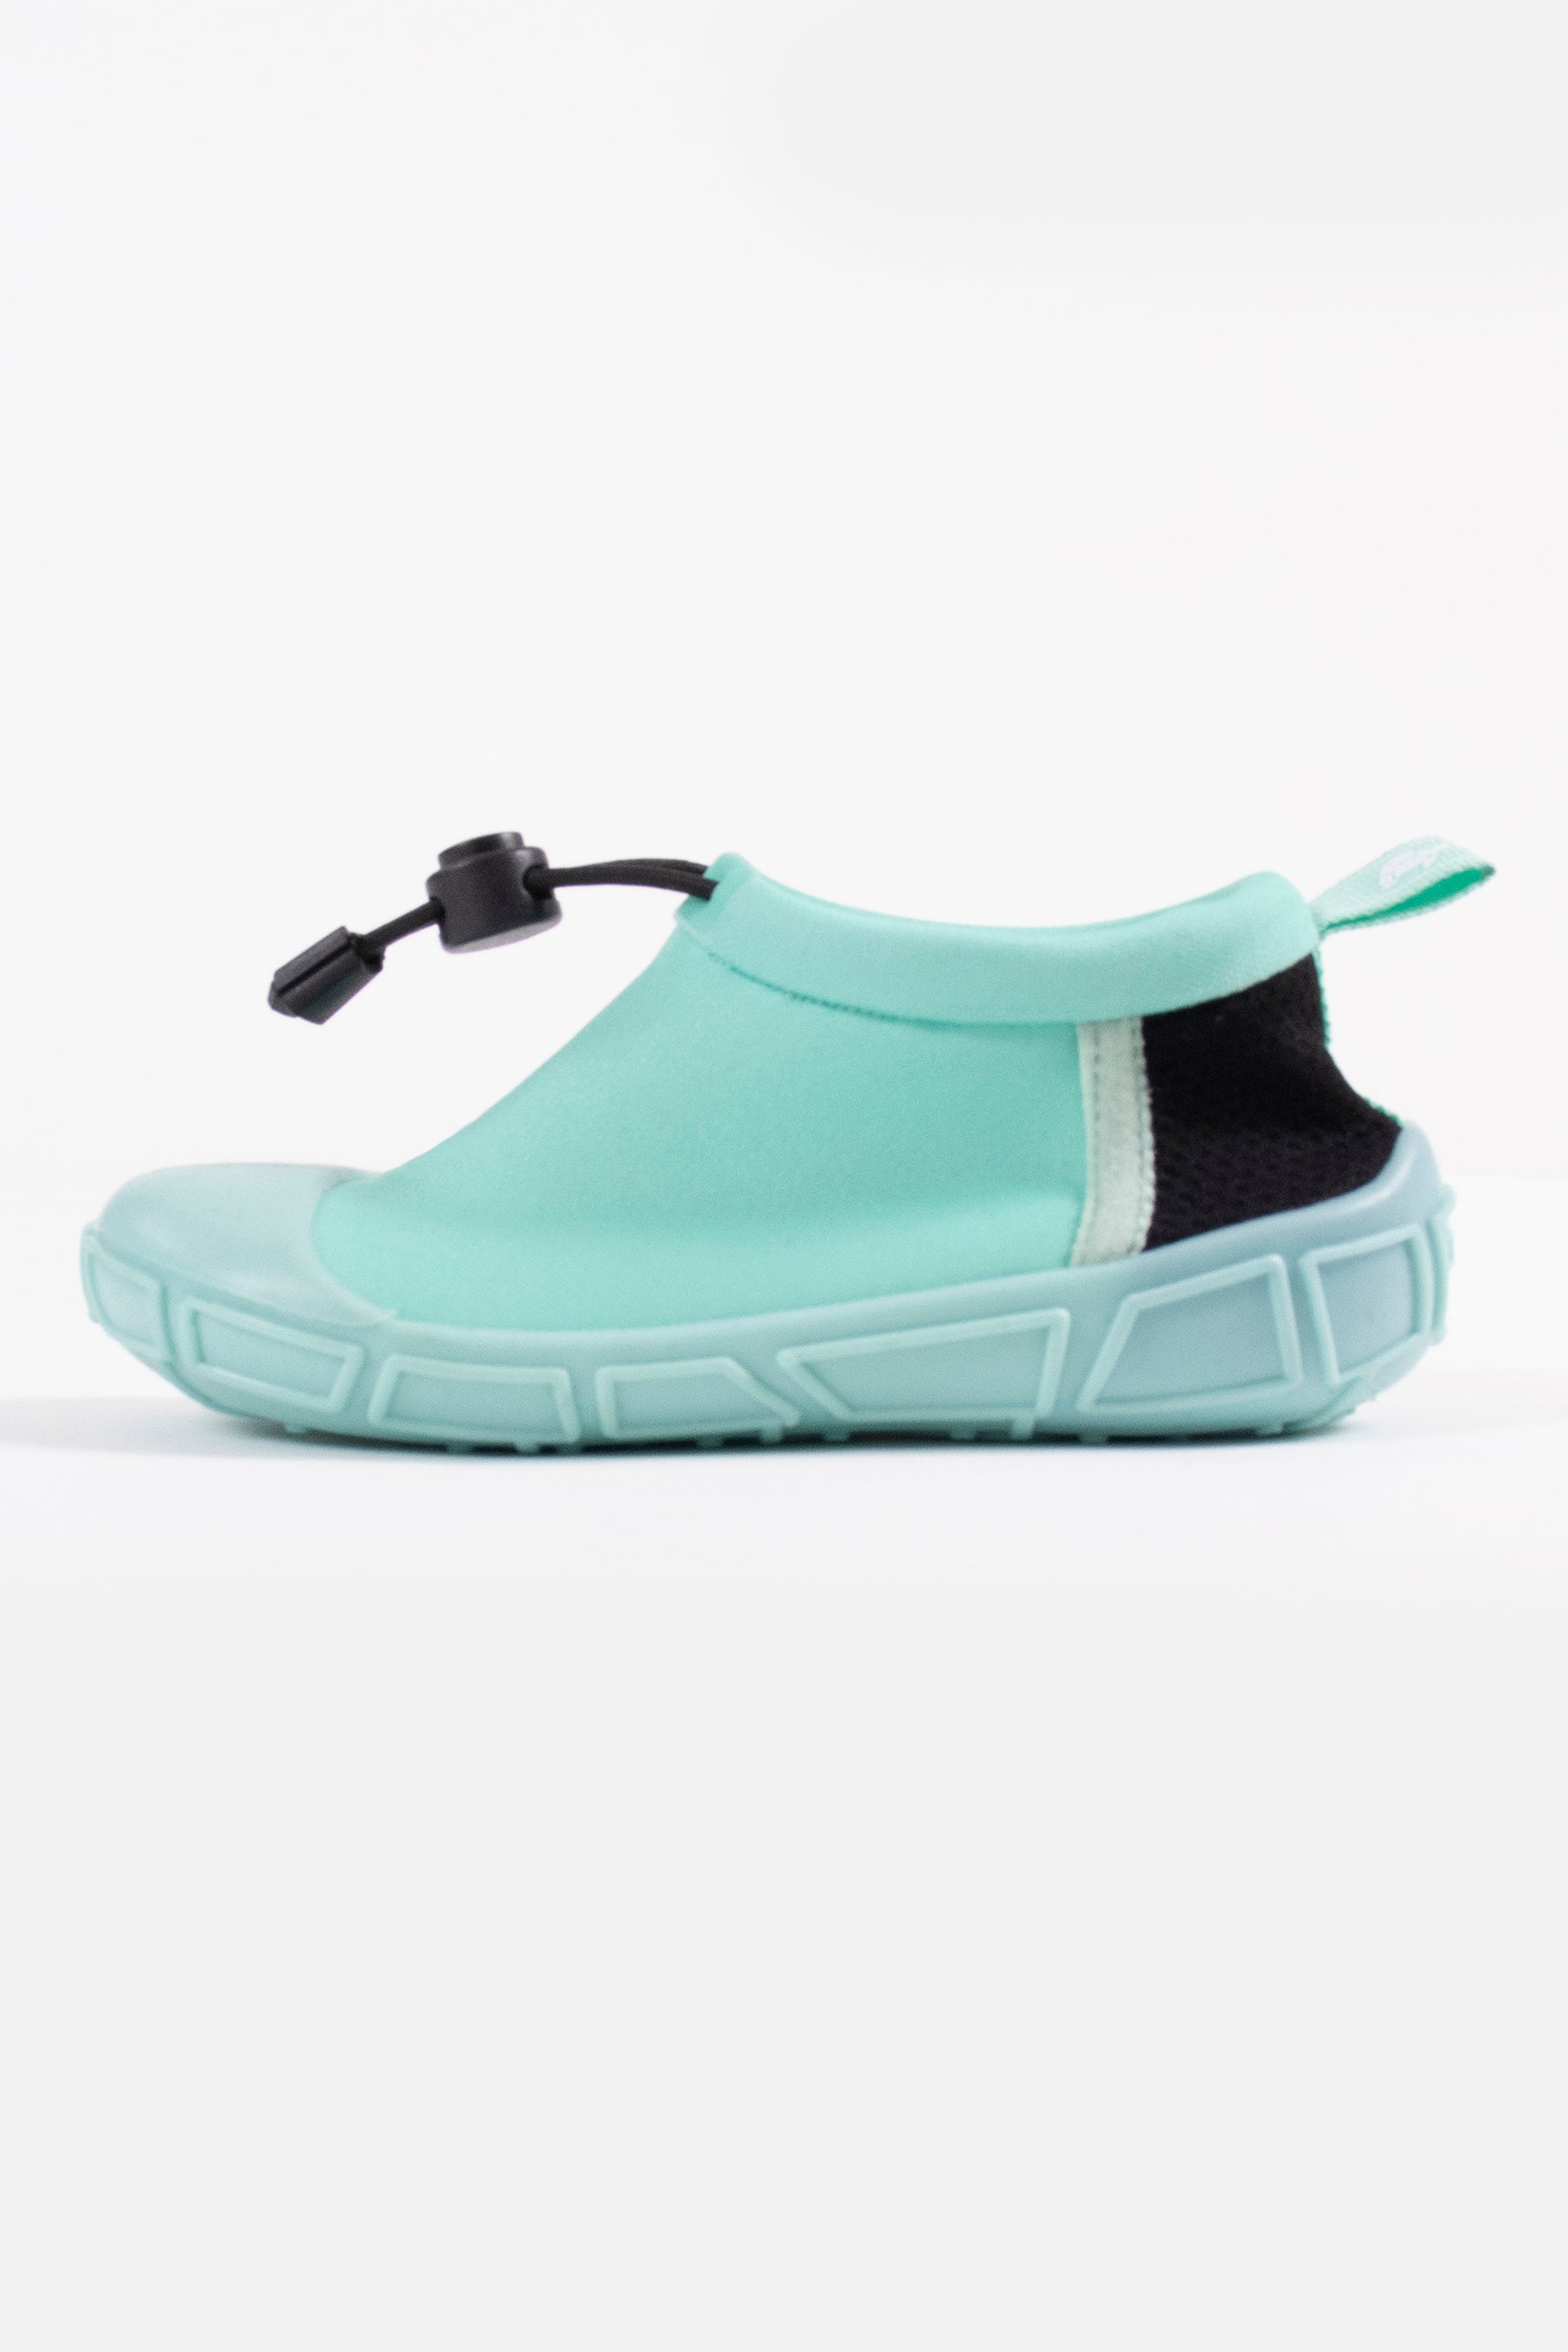 toggle aqua/water shoes in aqua